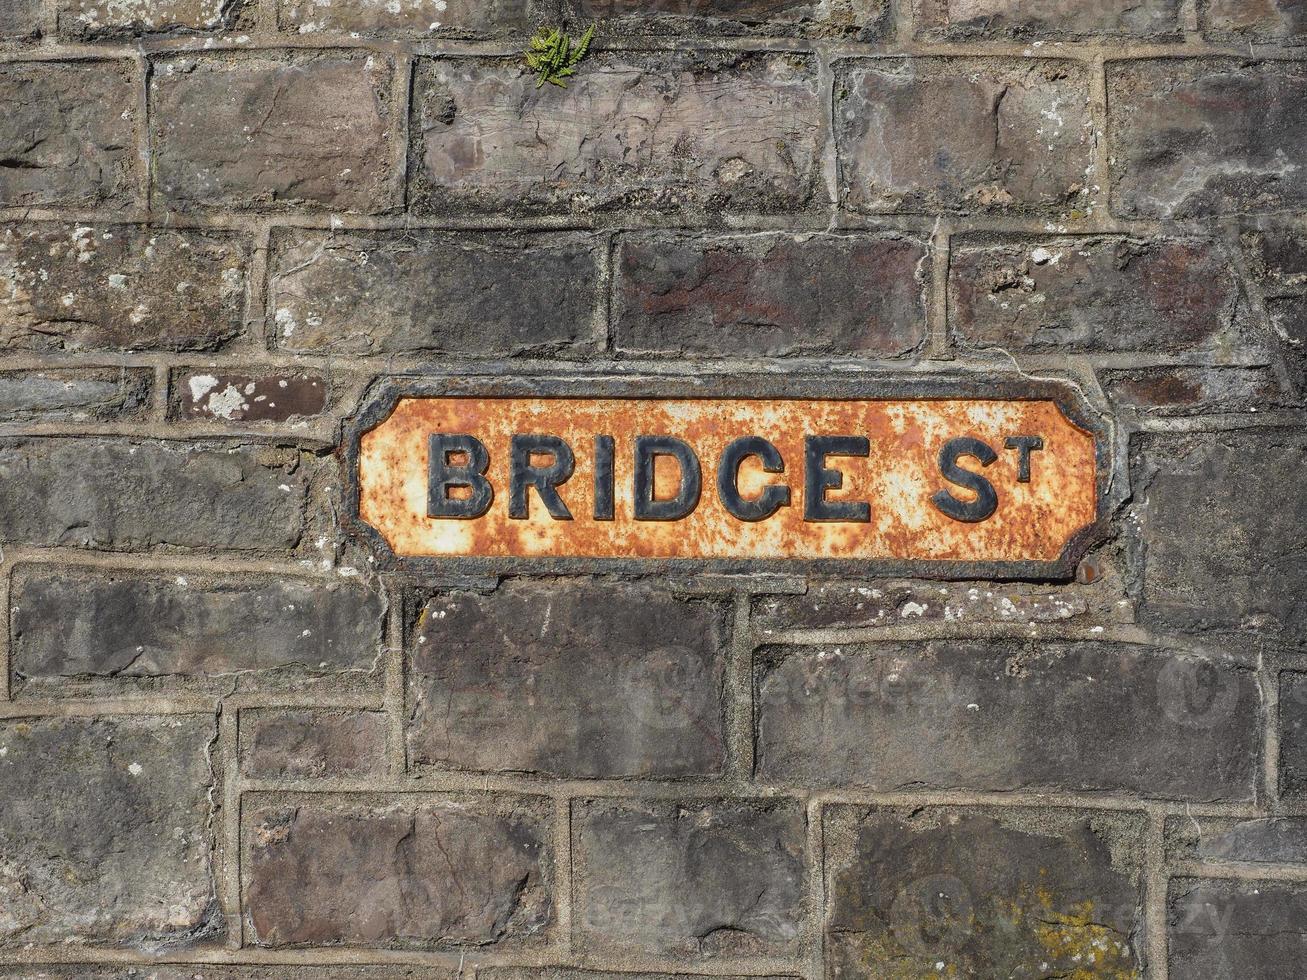 Bridge-Stree-Schild in Chepstow foto